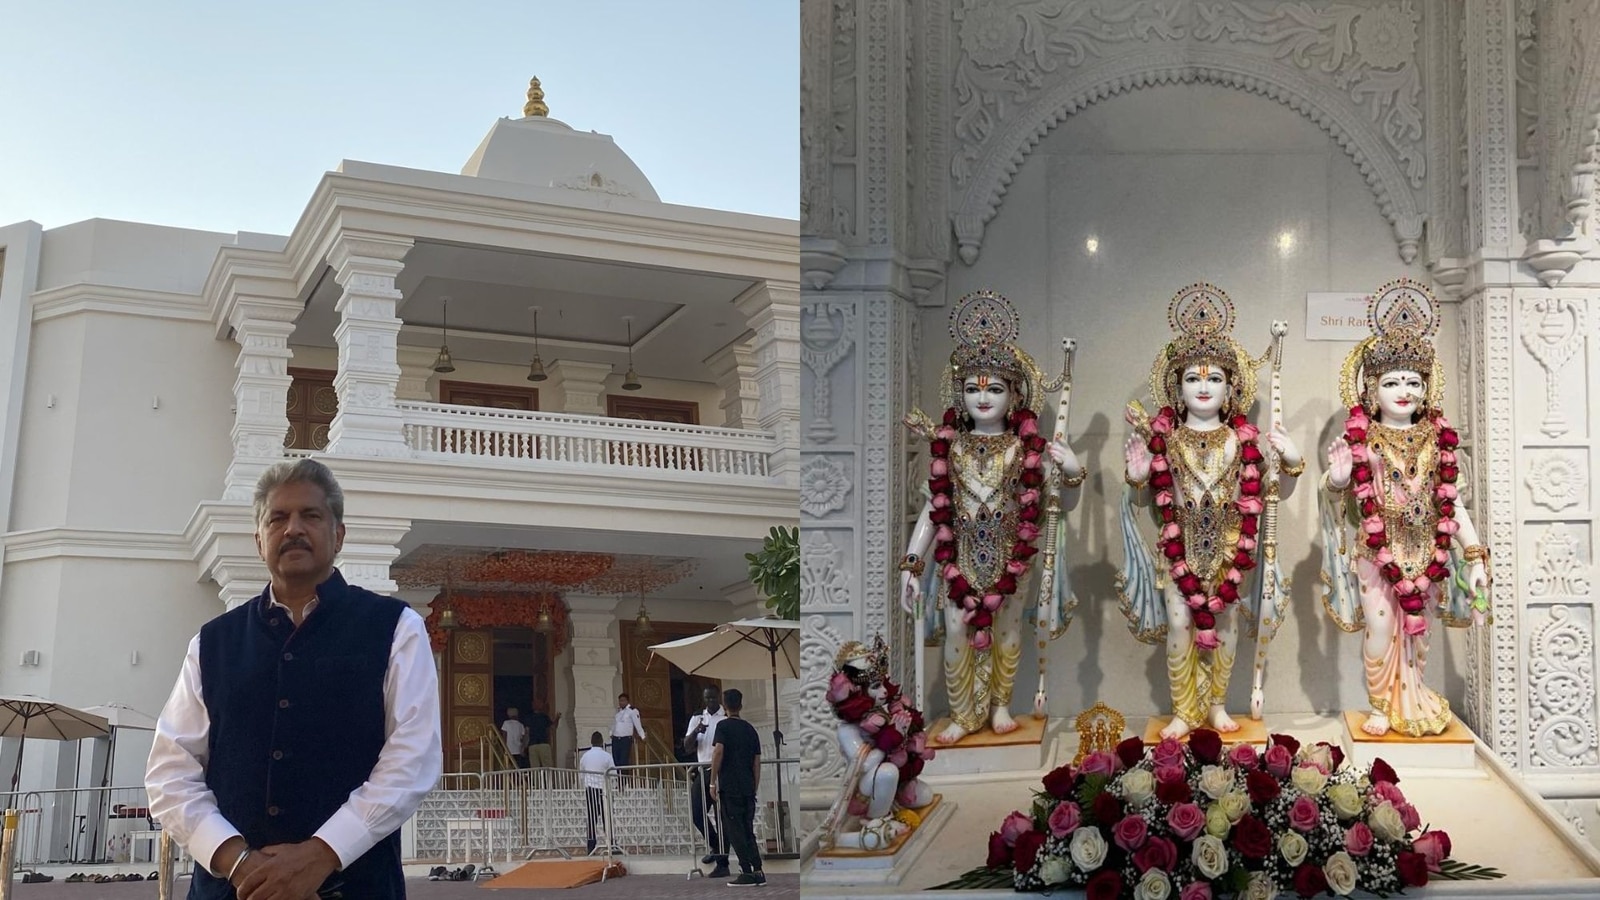 Anand Mahindra Visits Hindu Temple In Dubai 1667207445697 1667207467089 1667207467089 